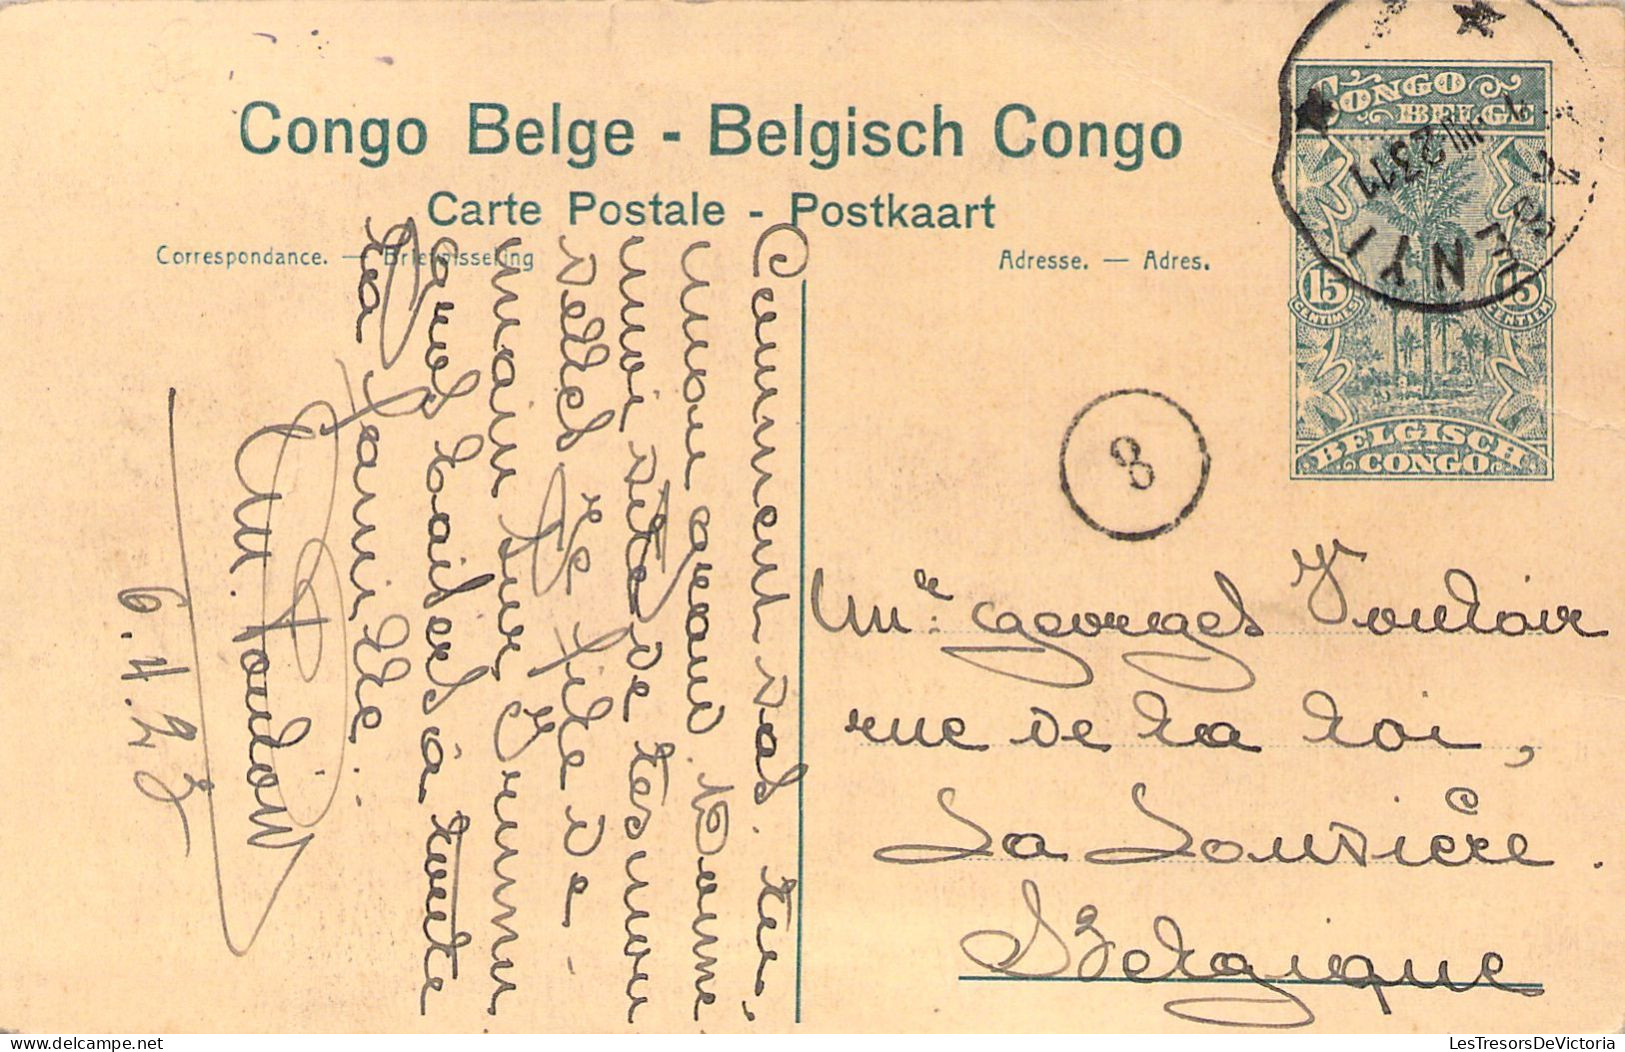 CONGO BELGE - IBEMBO - Le Vapeur "Ville De Bruges" à La Rive - Carte Postale Ancienne - Belgian Congo